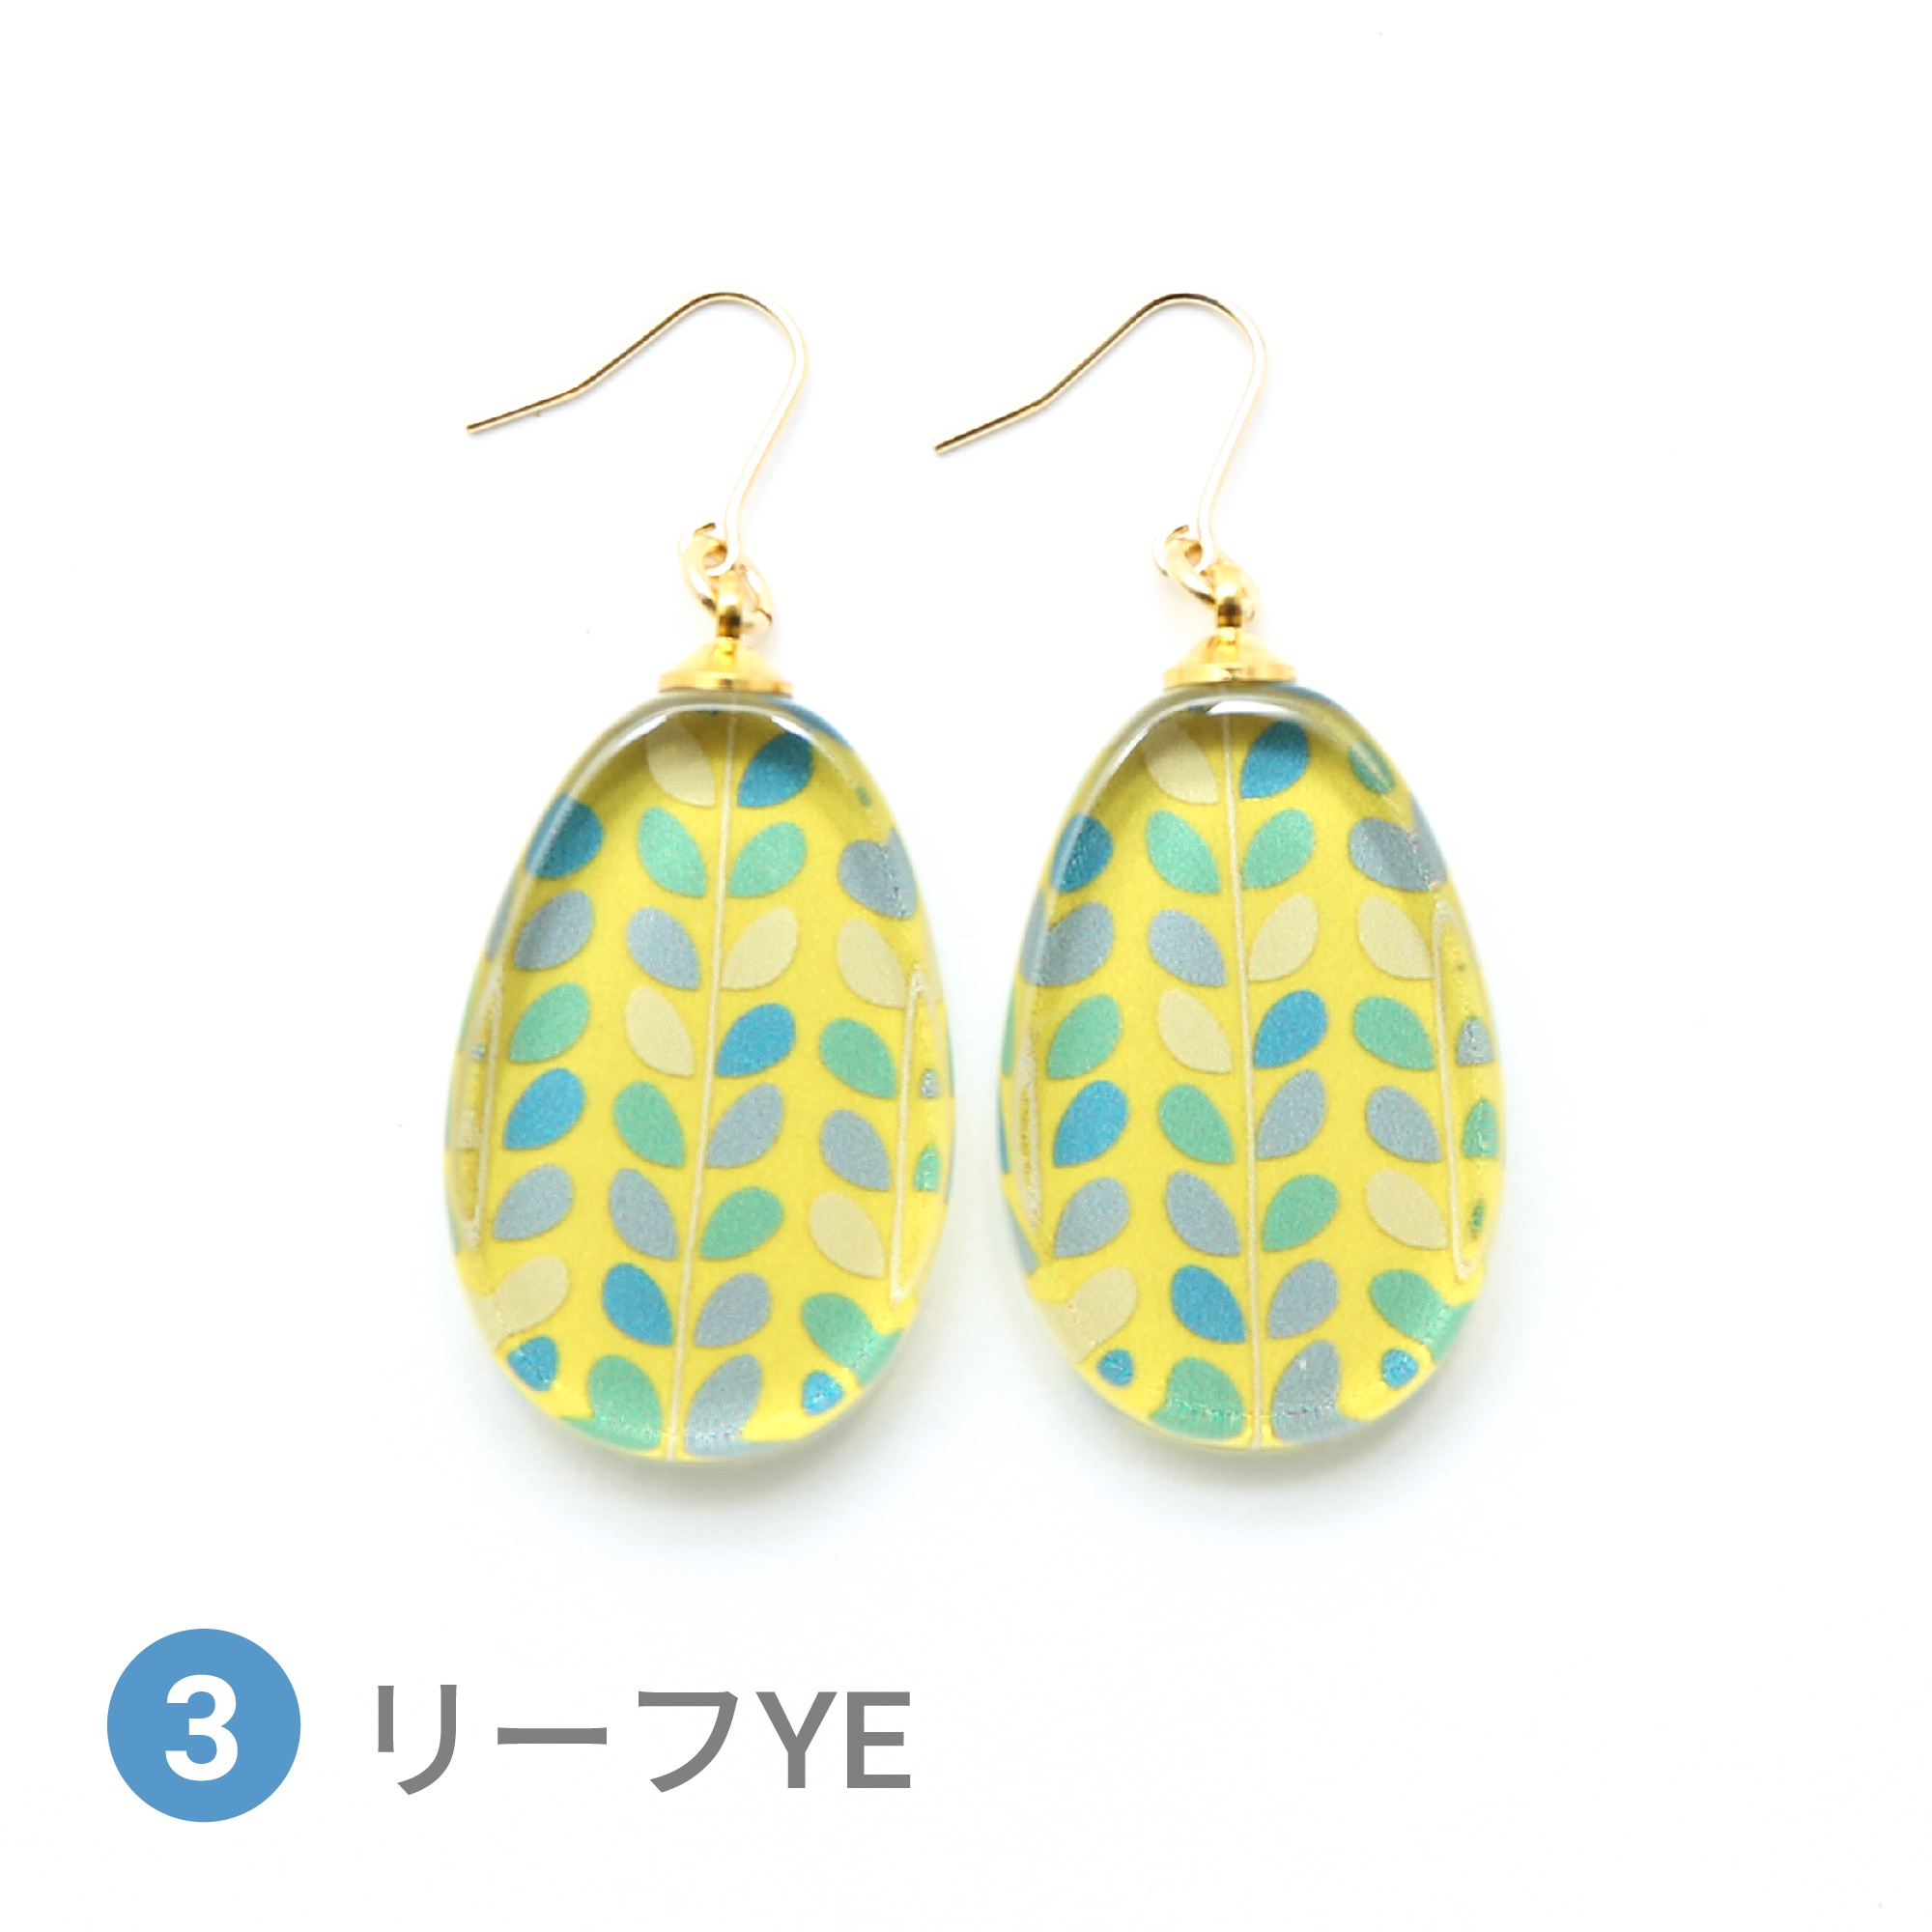 Glass accessories Pierced Earring SCANDINAVIAN leaf yellow drop shape